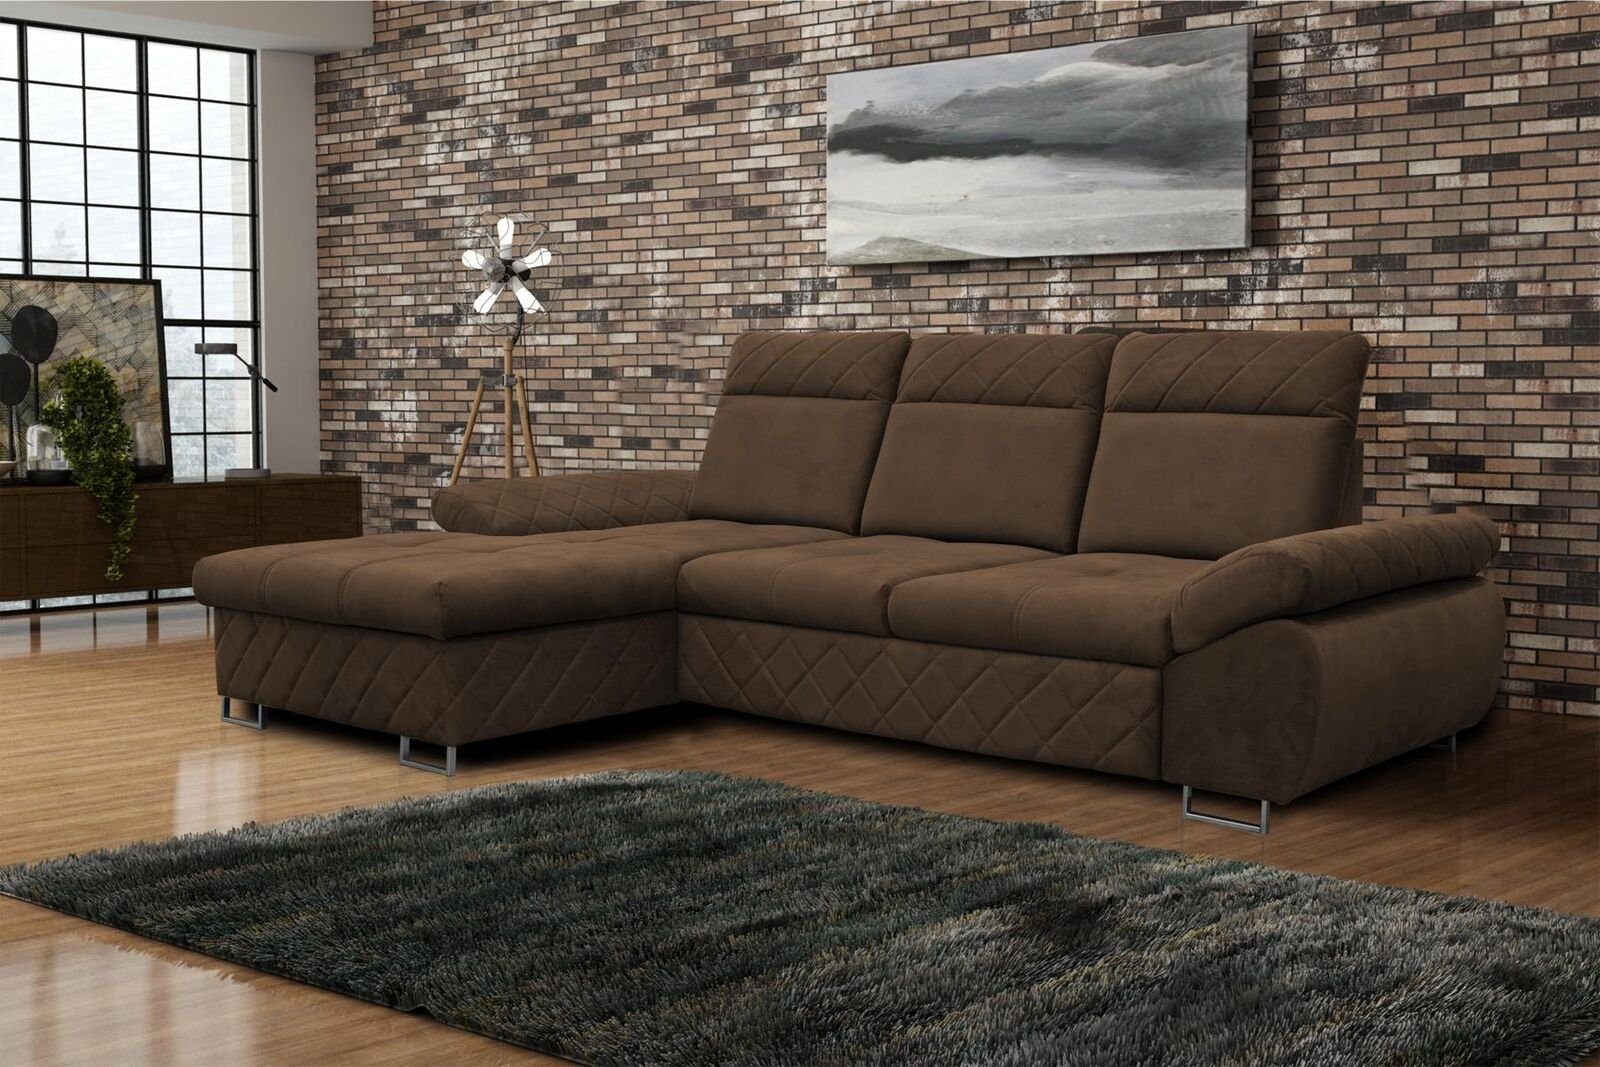 JVmoebel Ecksofa Wohnzimmer Textil L-Form Sofas Braune Ecksofa Couch Polstermöbel, Mit Bettfunktion